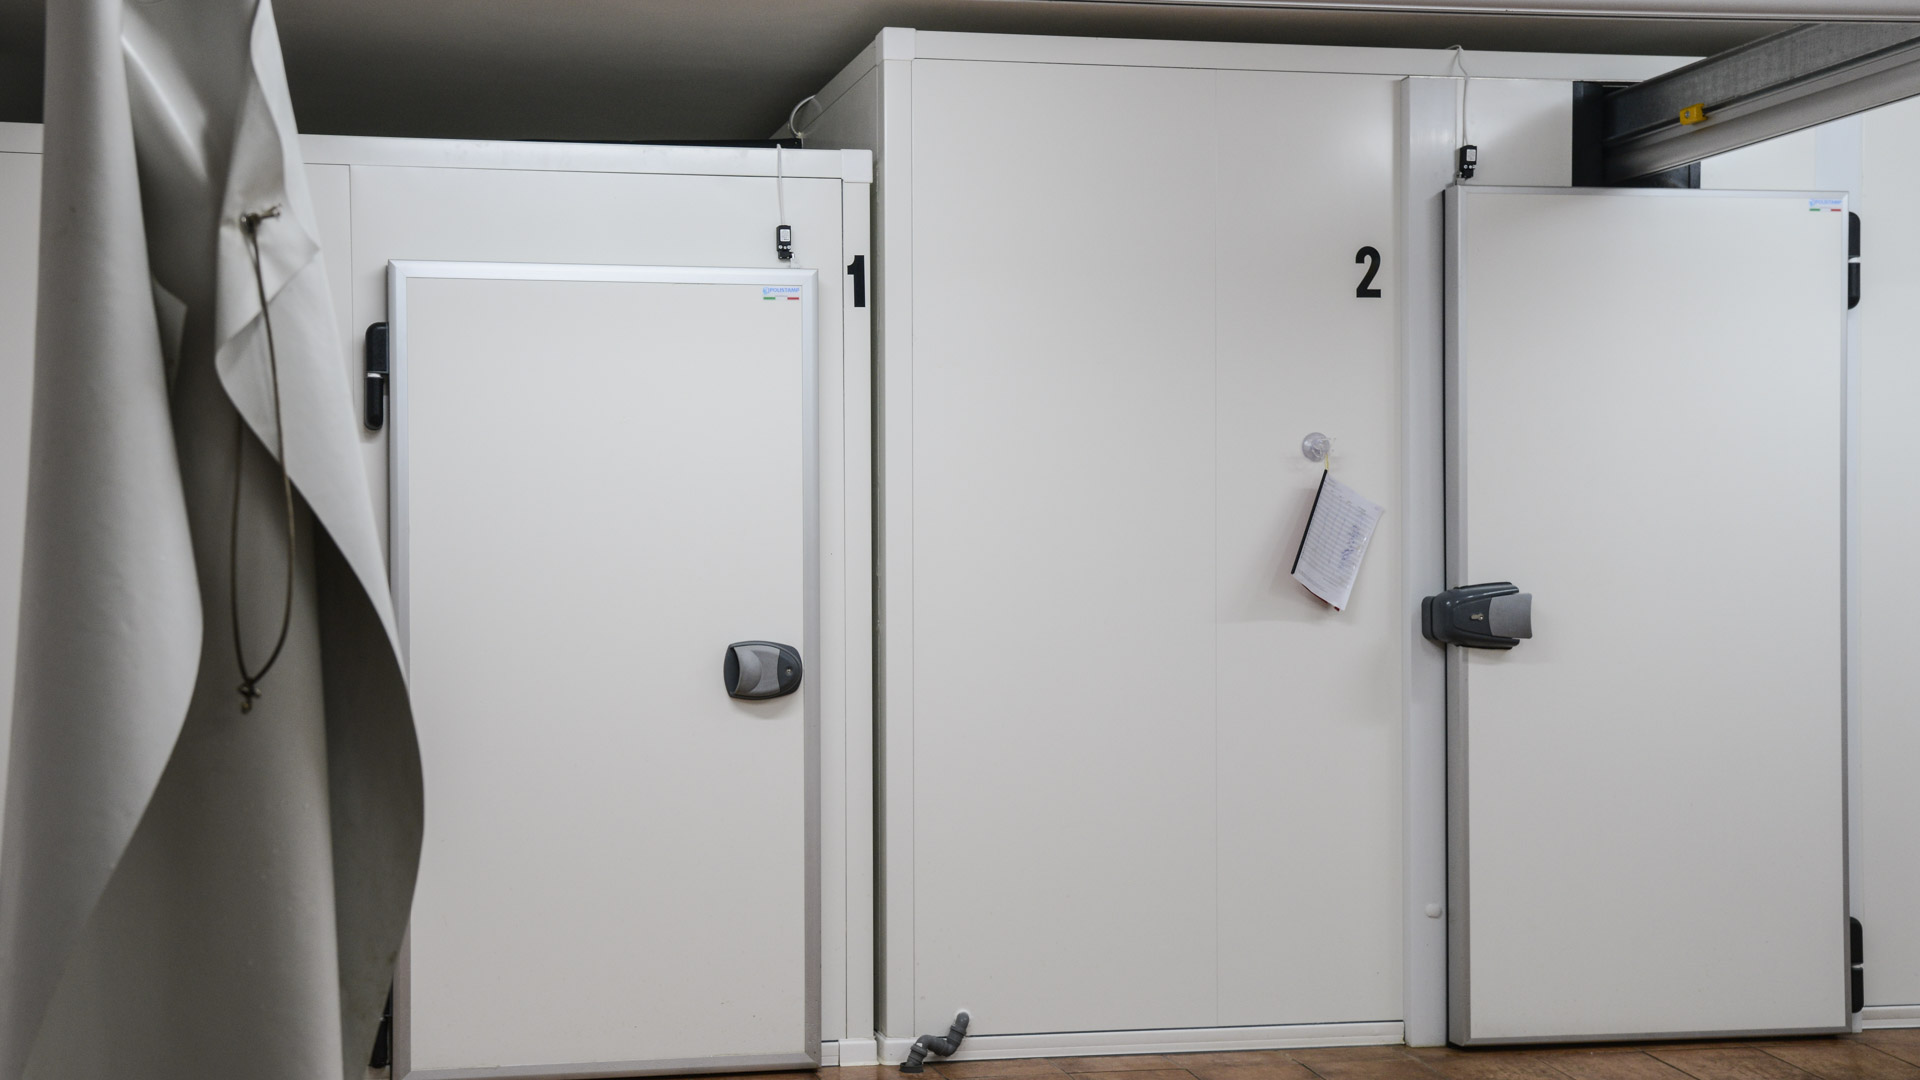 Nella prima delle tre celle frigorifere presenti vengono conservati i sottoprodotti della lavorazione poi smaltiti da parte di una ditta specializzata